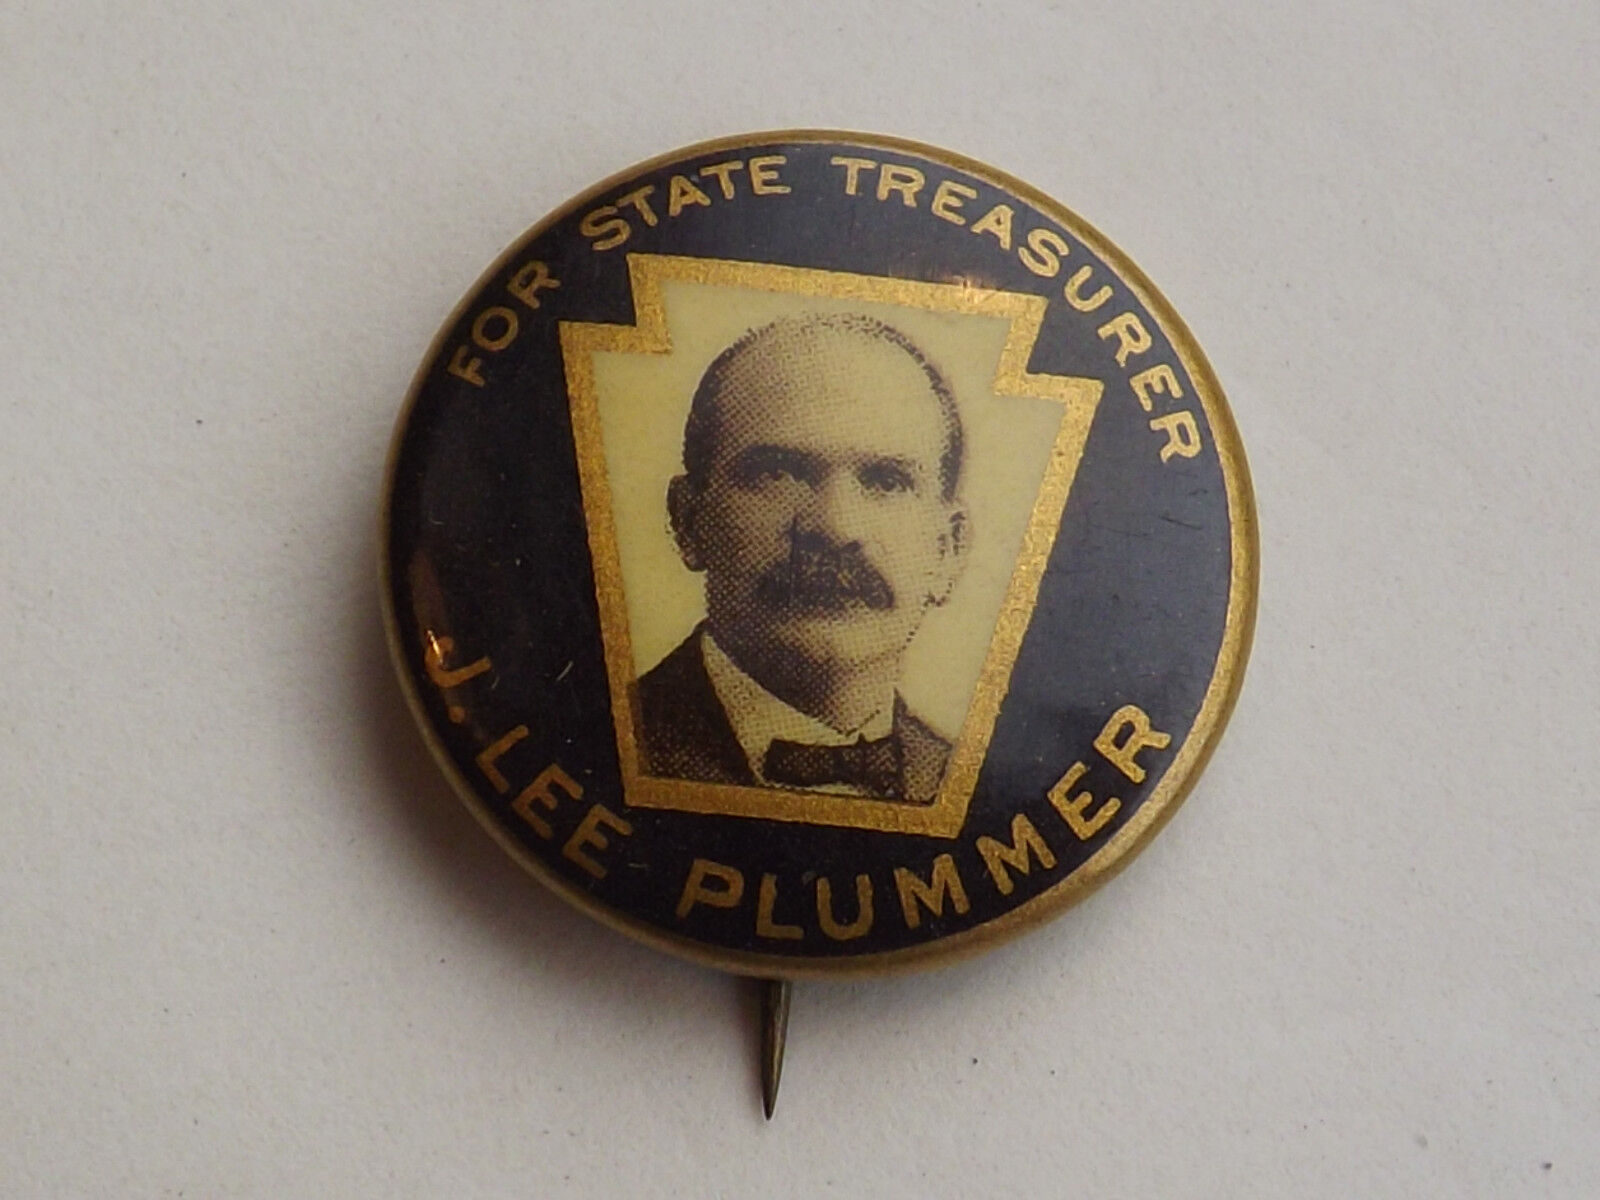 VINTAGE 1898 J LEE PLUMMER STATE TREASURER CAMPAIGN BUTTON PINBACK